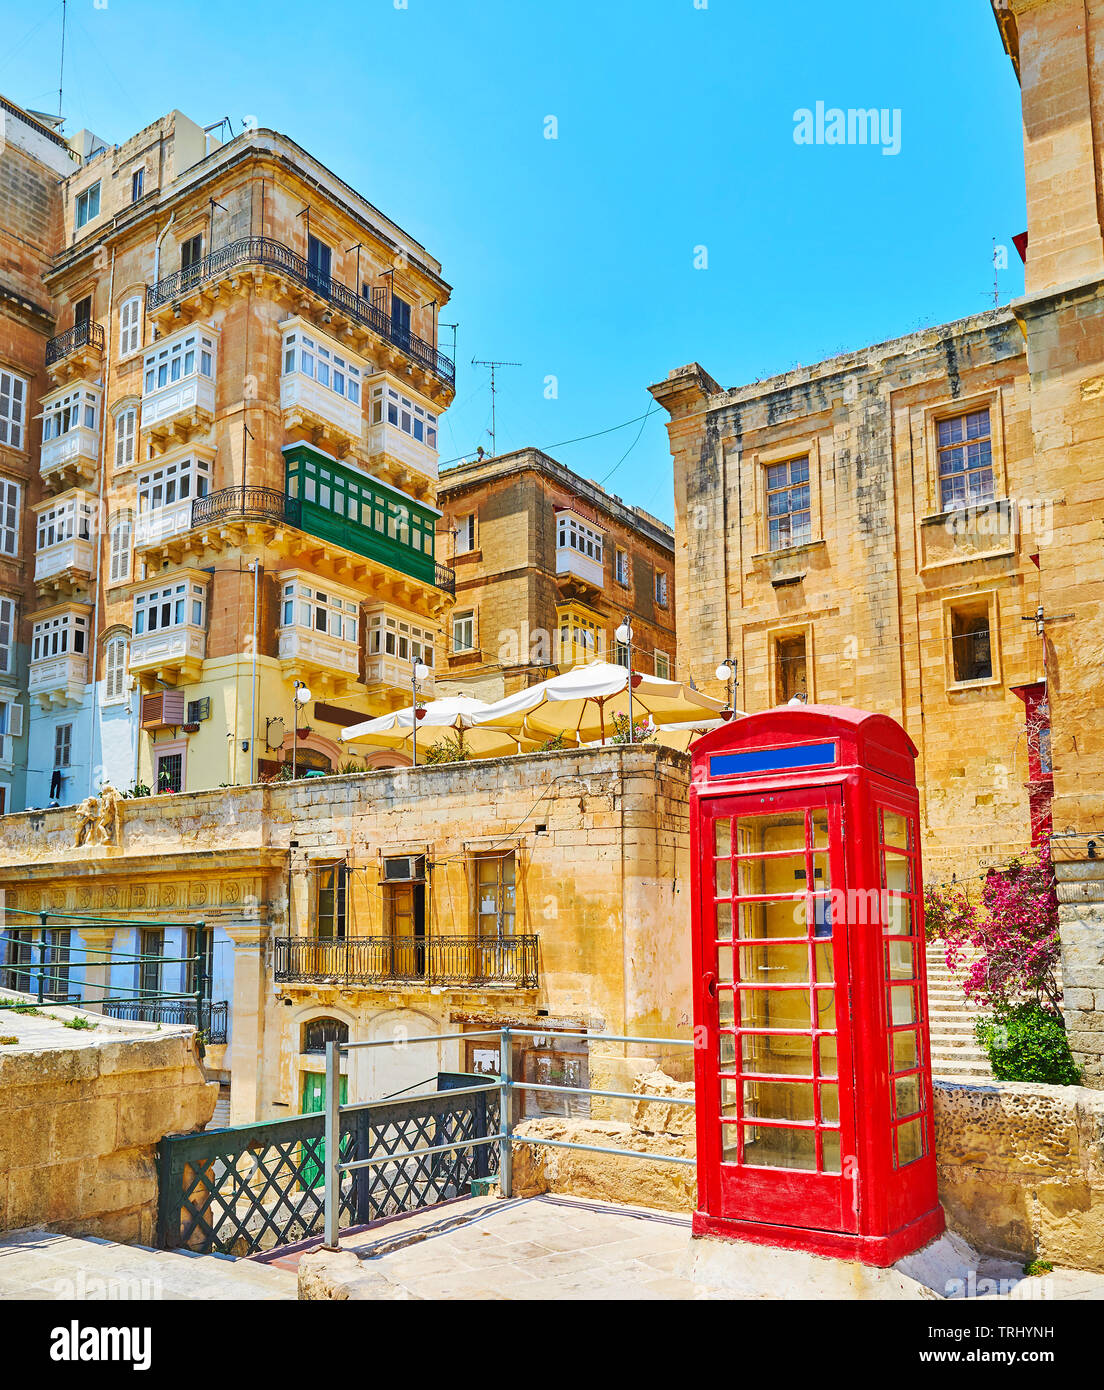 La scena urbana nella città vecchia con una vista sulla vita medievale case e vintage telefono rosso casella sul primo piano, Valletta, Malta. Foto Stock